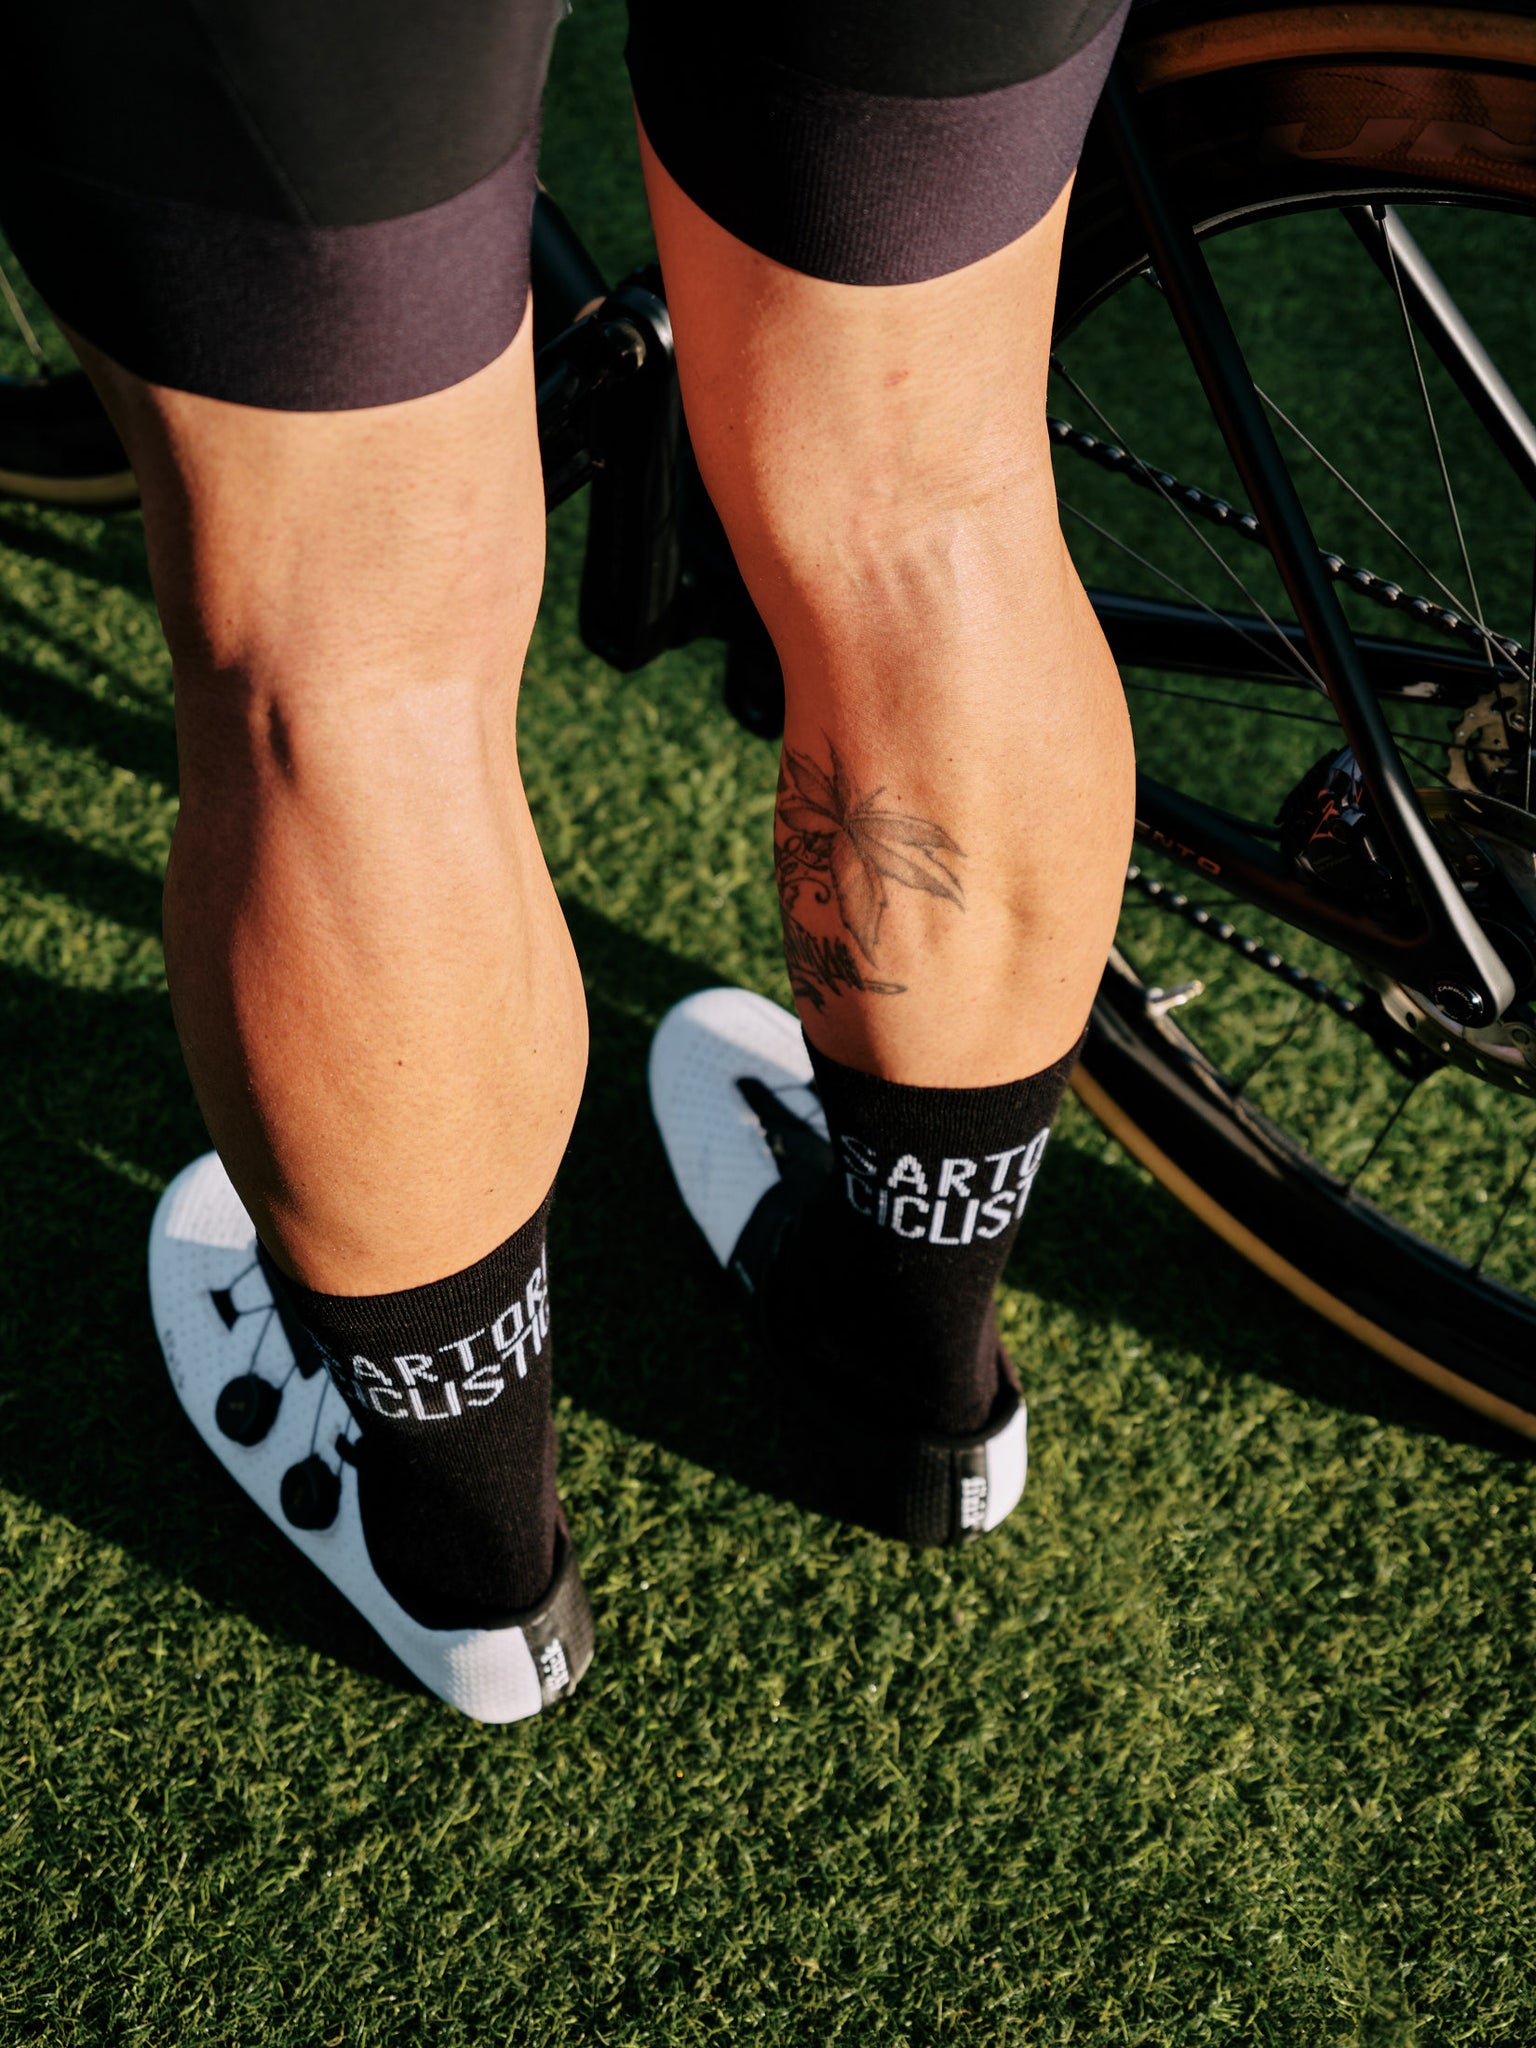 Black Sartoria Ciclistica merino socks